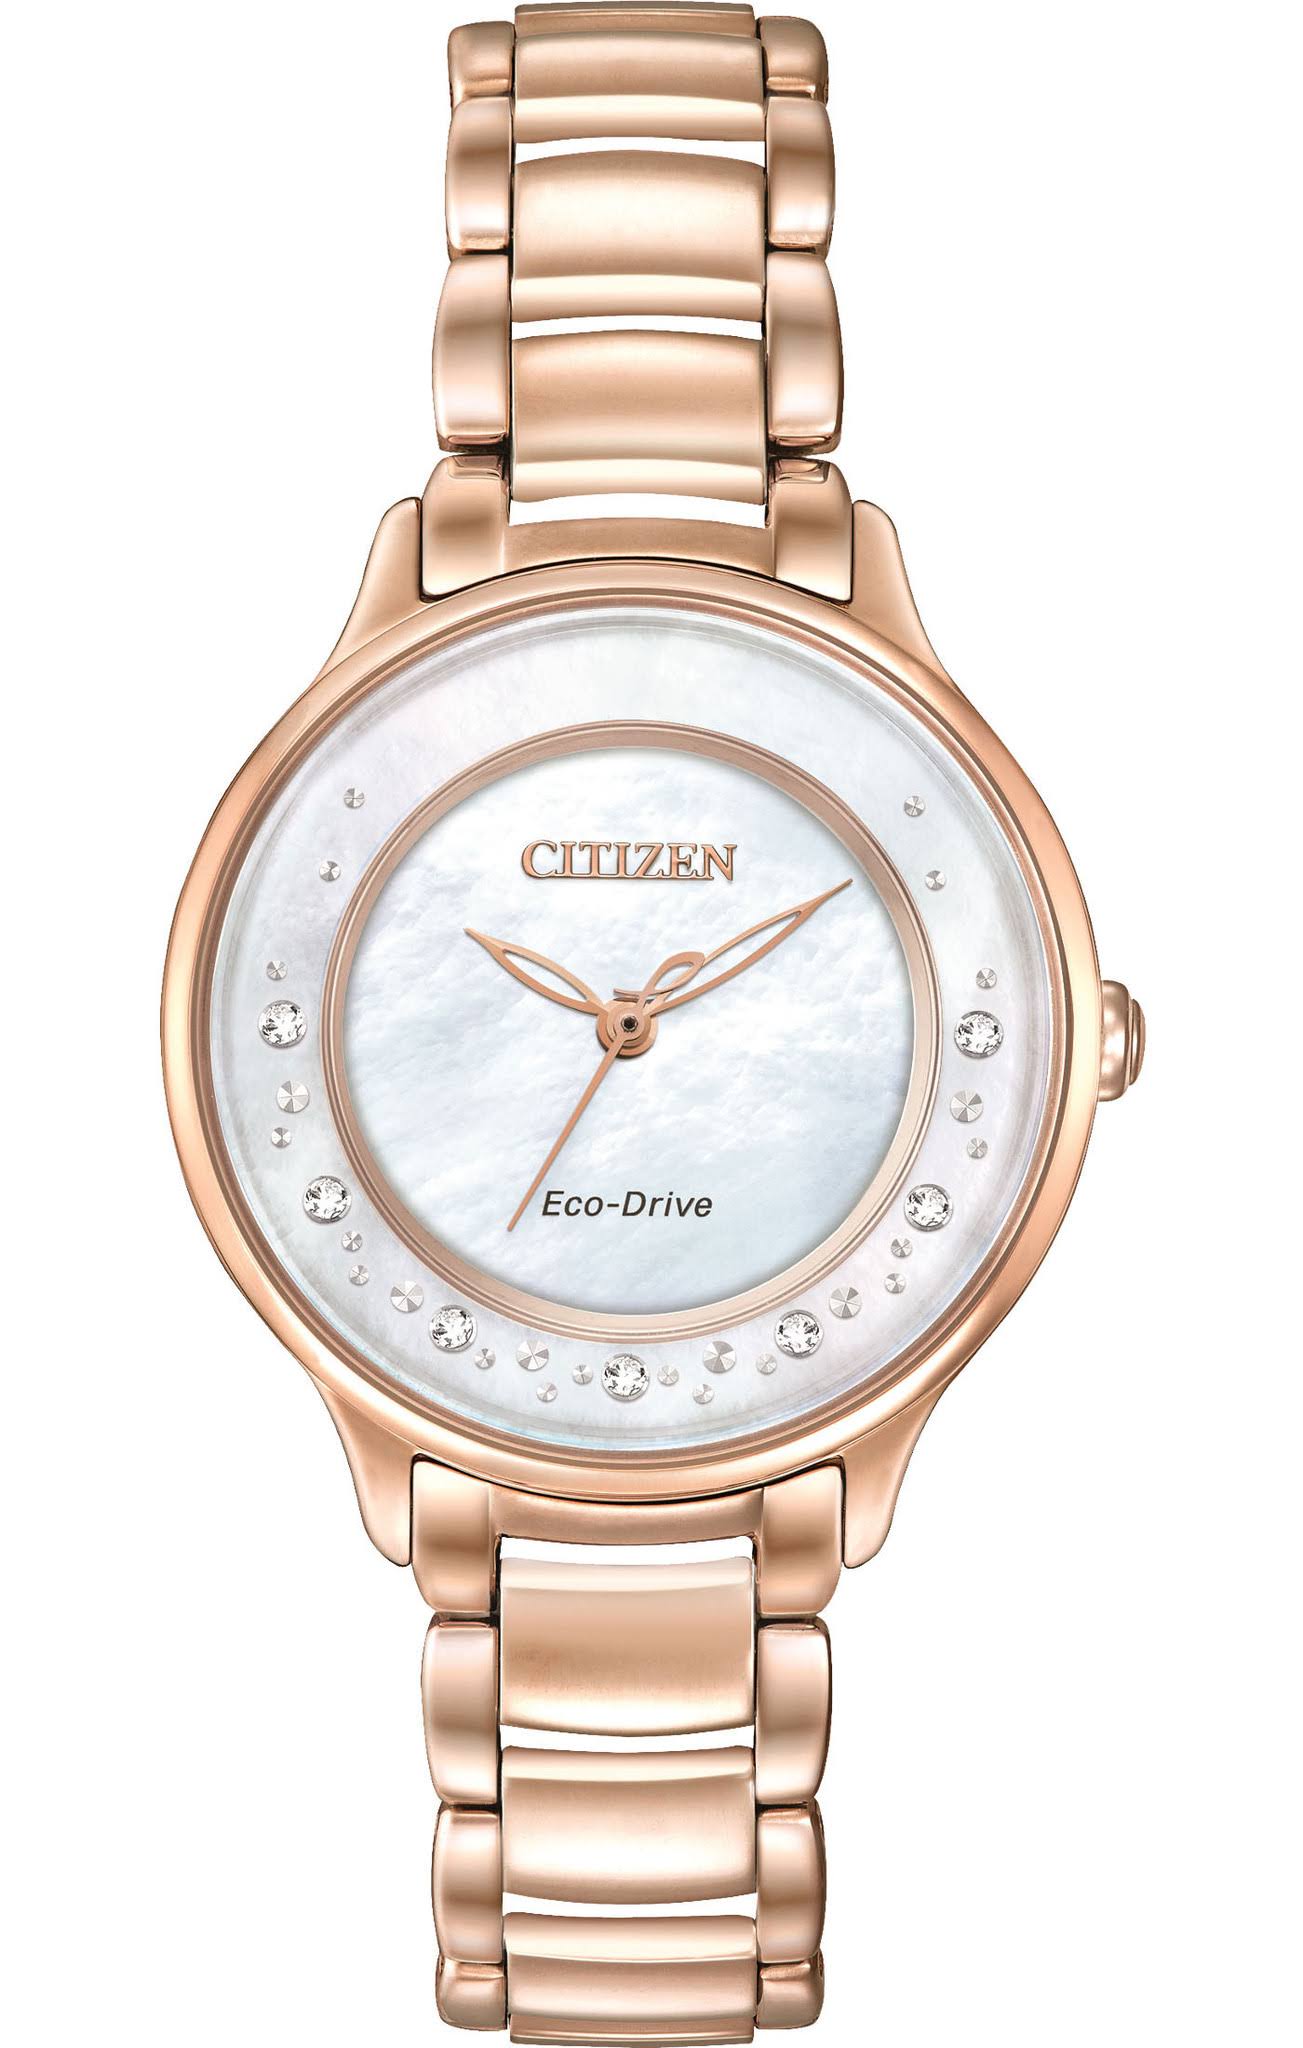 Citizen Watch Company 씨티즌 에코 드라이브 여성용 EM0382-86D 서클 오브 타임 로즈 골드 시계